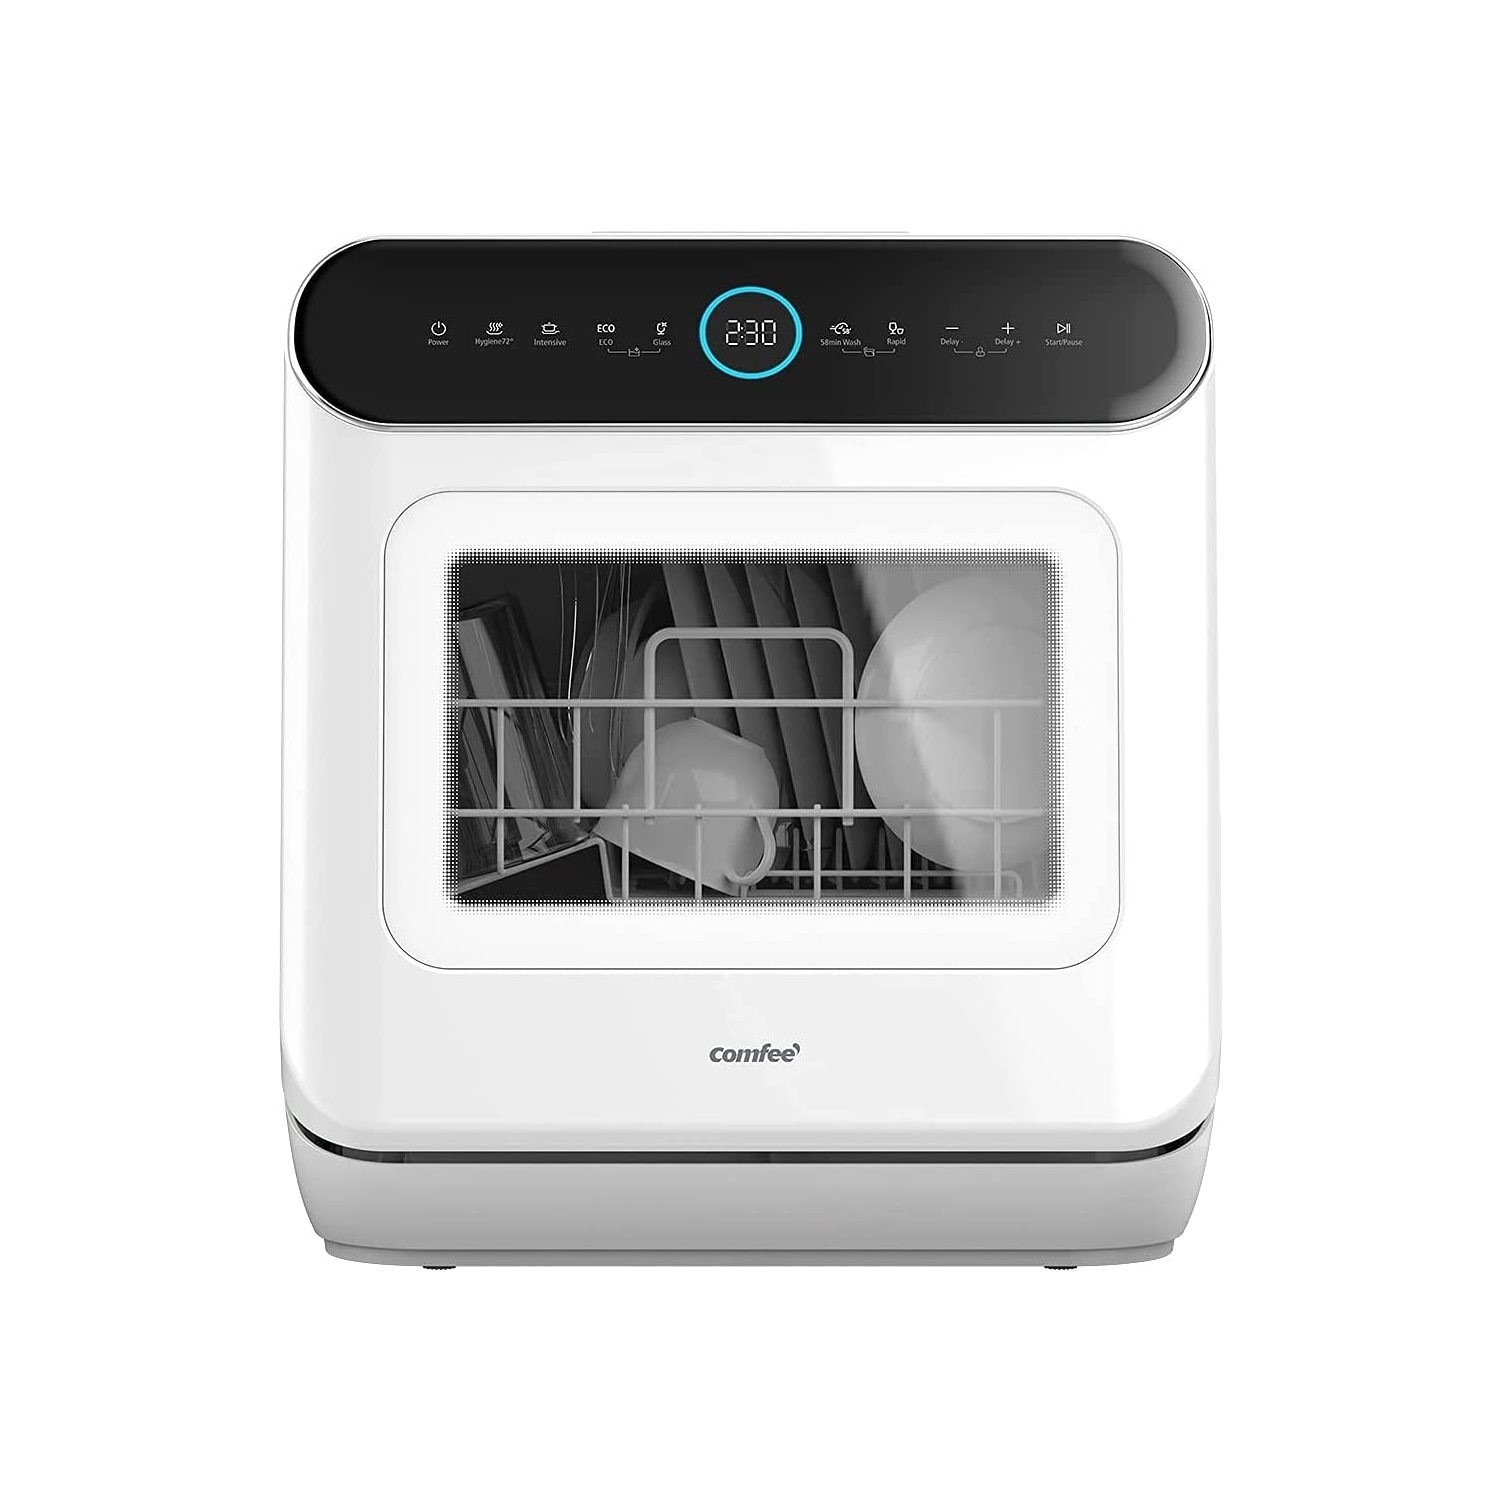 Comfee Mini Portable Countertop Dishwasher - White for sale online